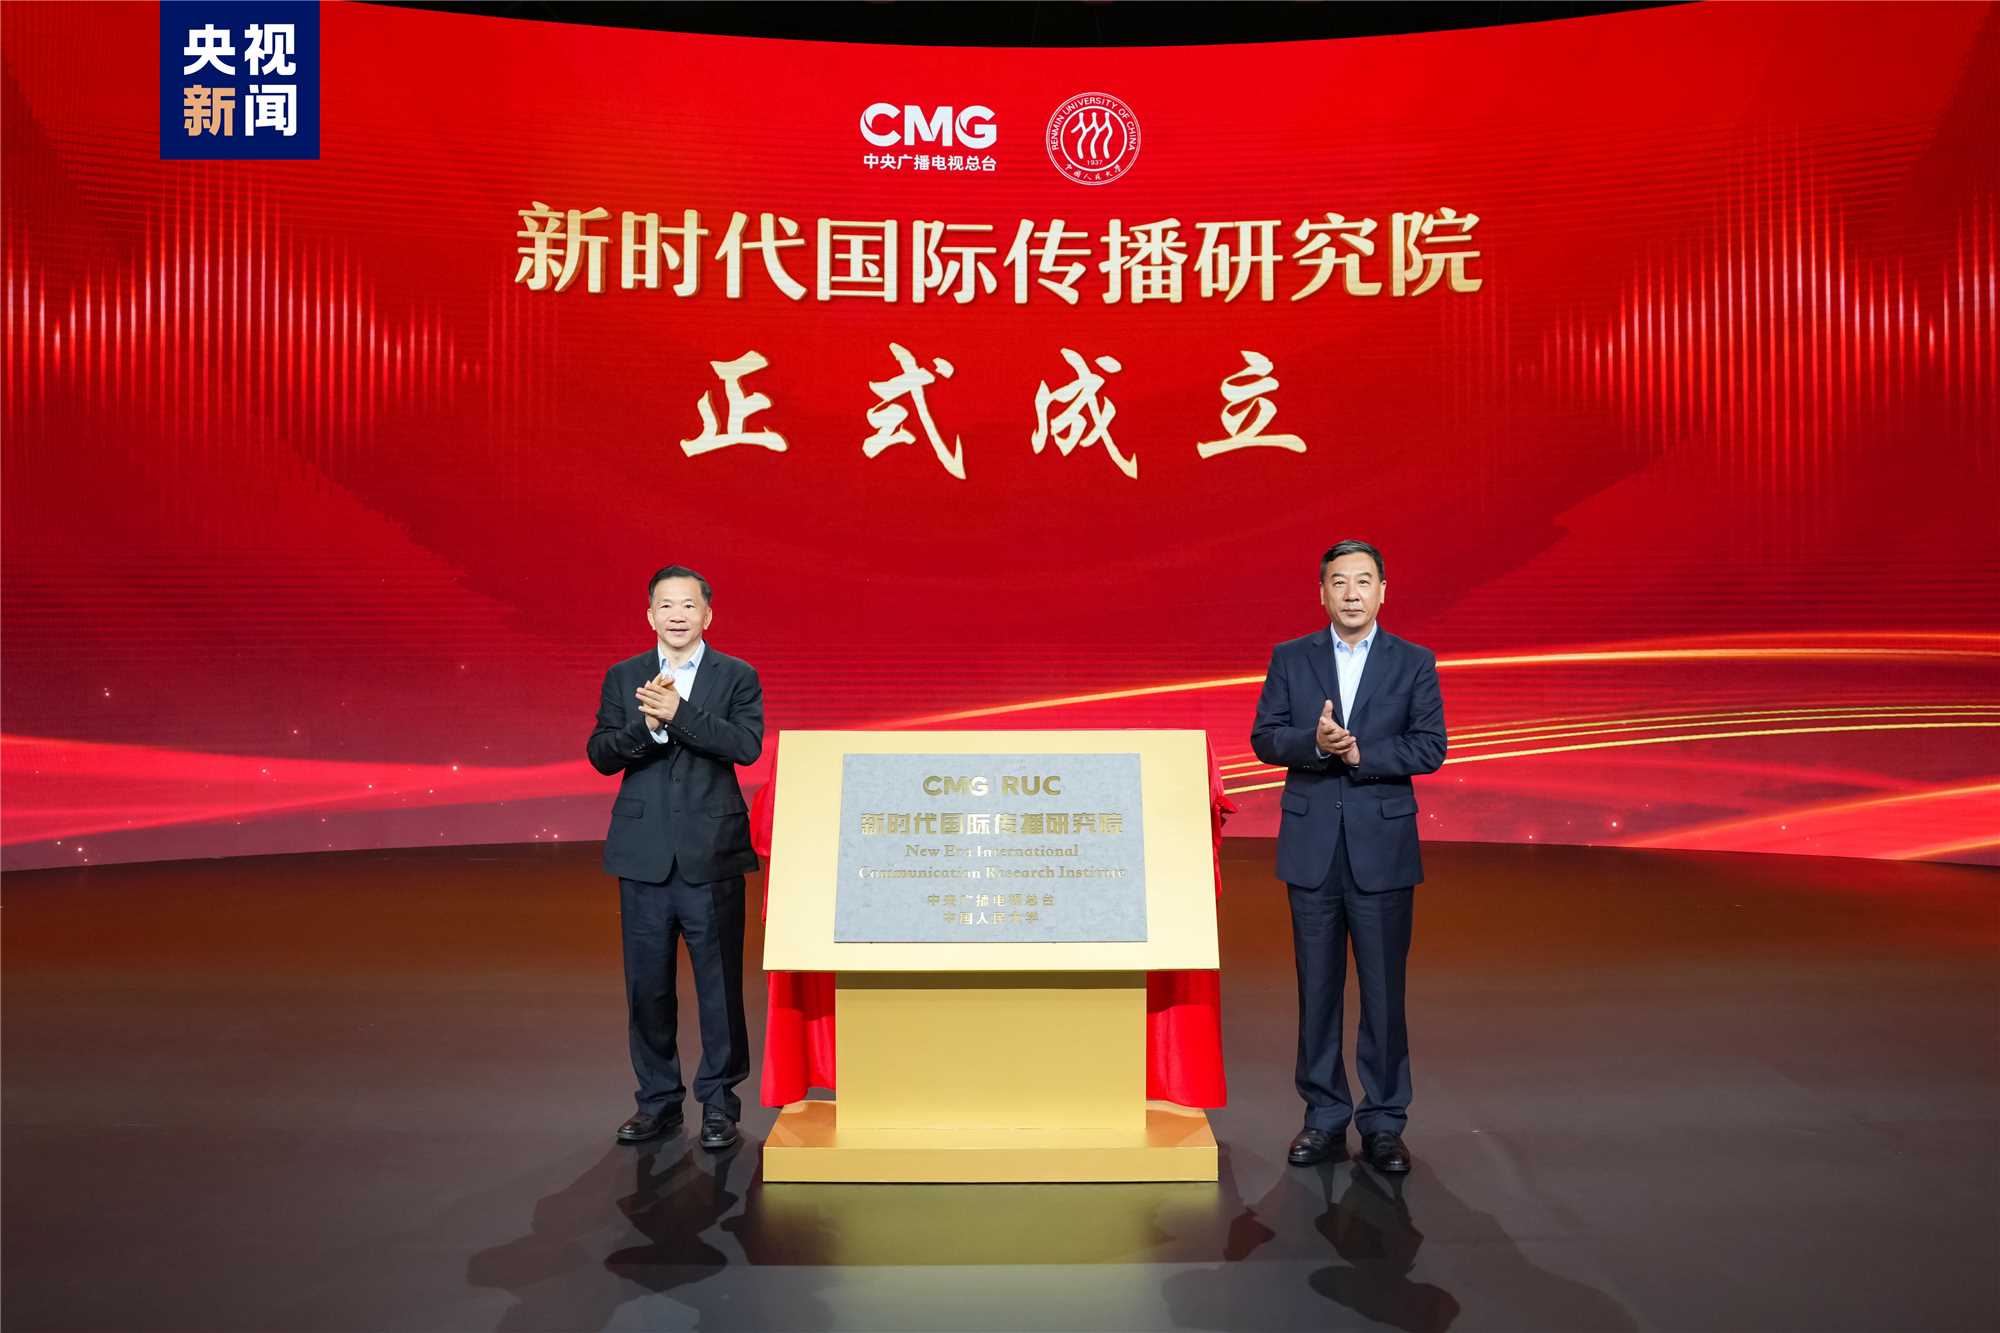 CMG e Universidade Renmin criam o Instituto de Pesquisa da Comunicação Internacional na Nova Era